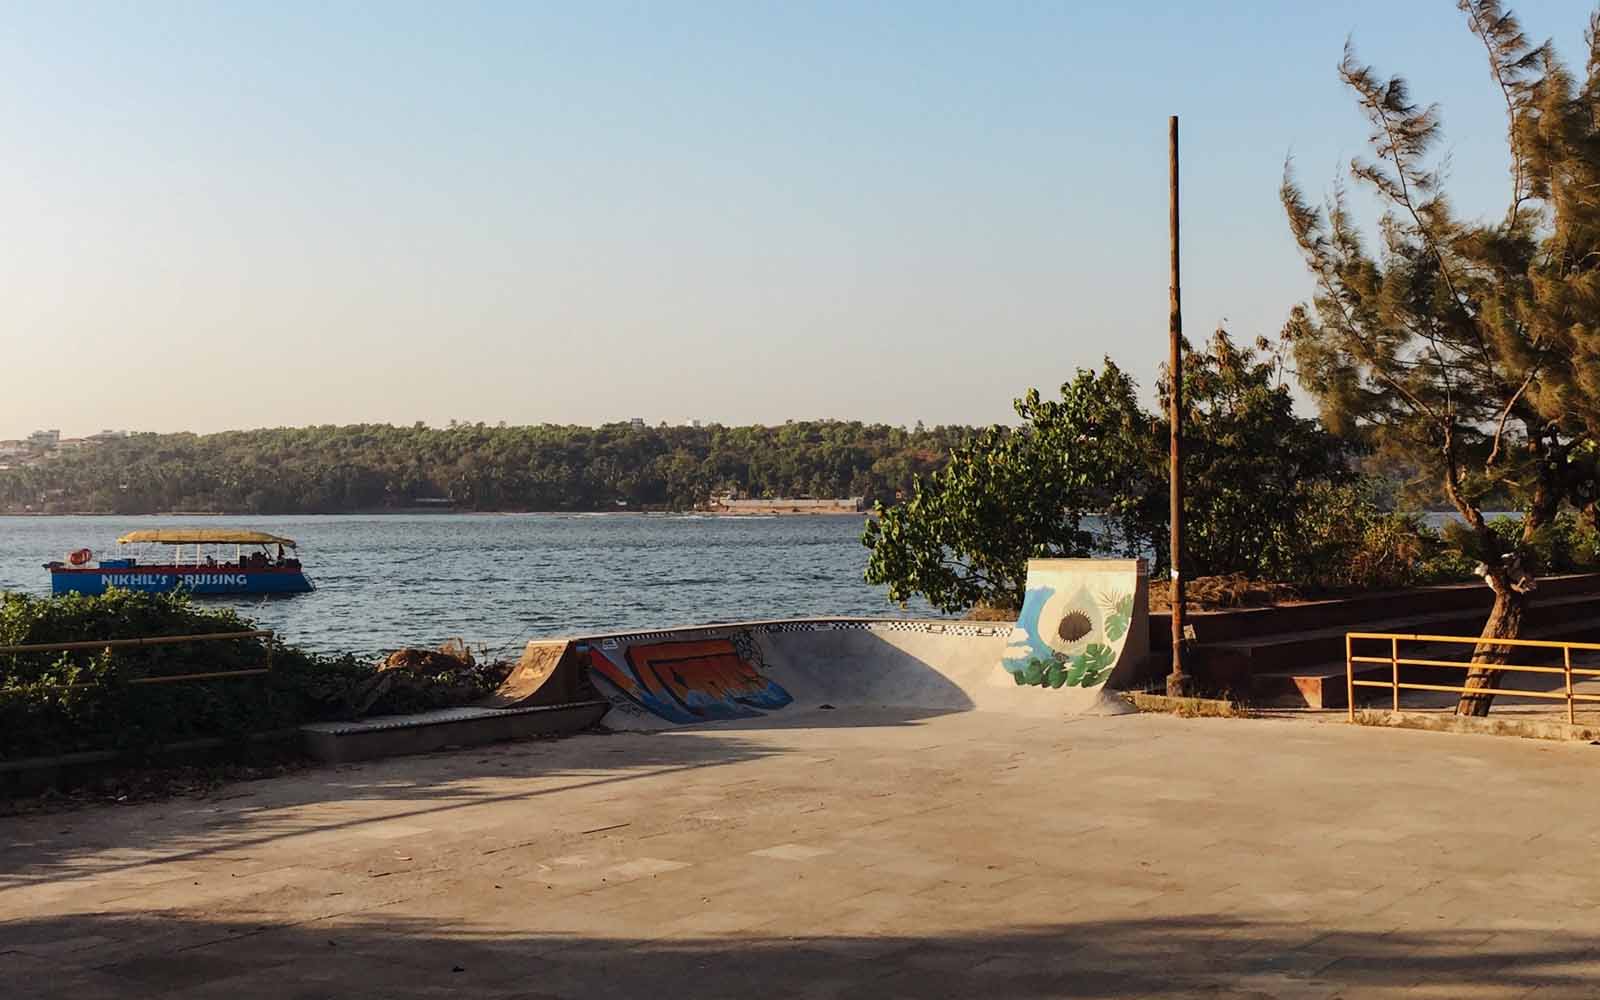 Youth hostel skatepark in goa